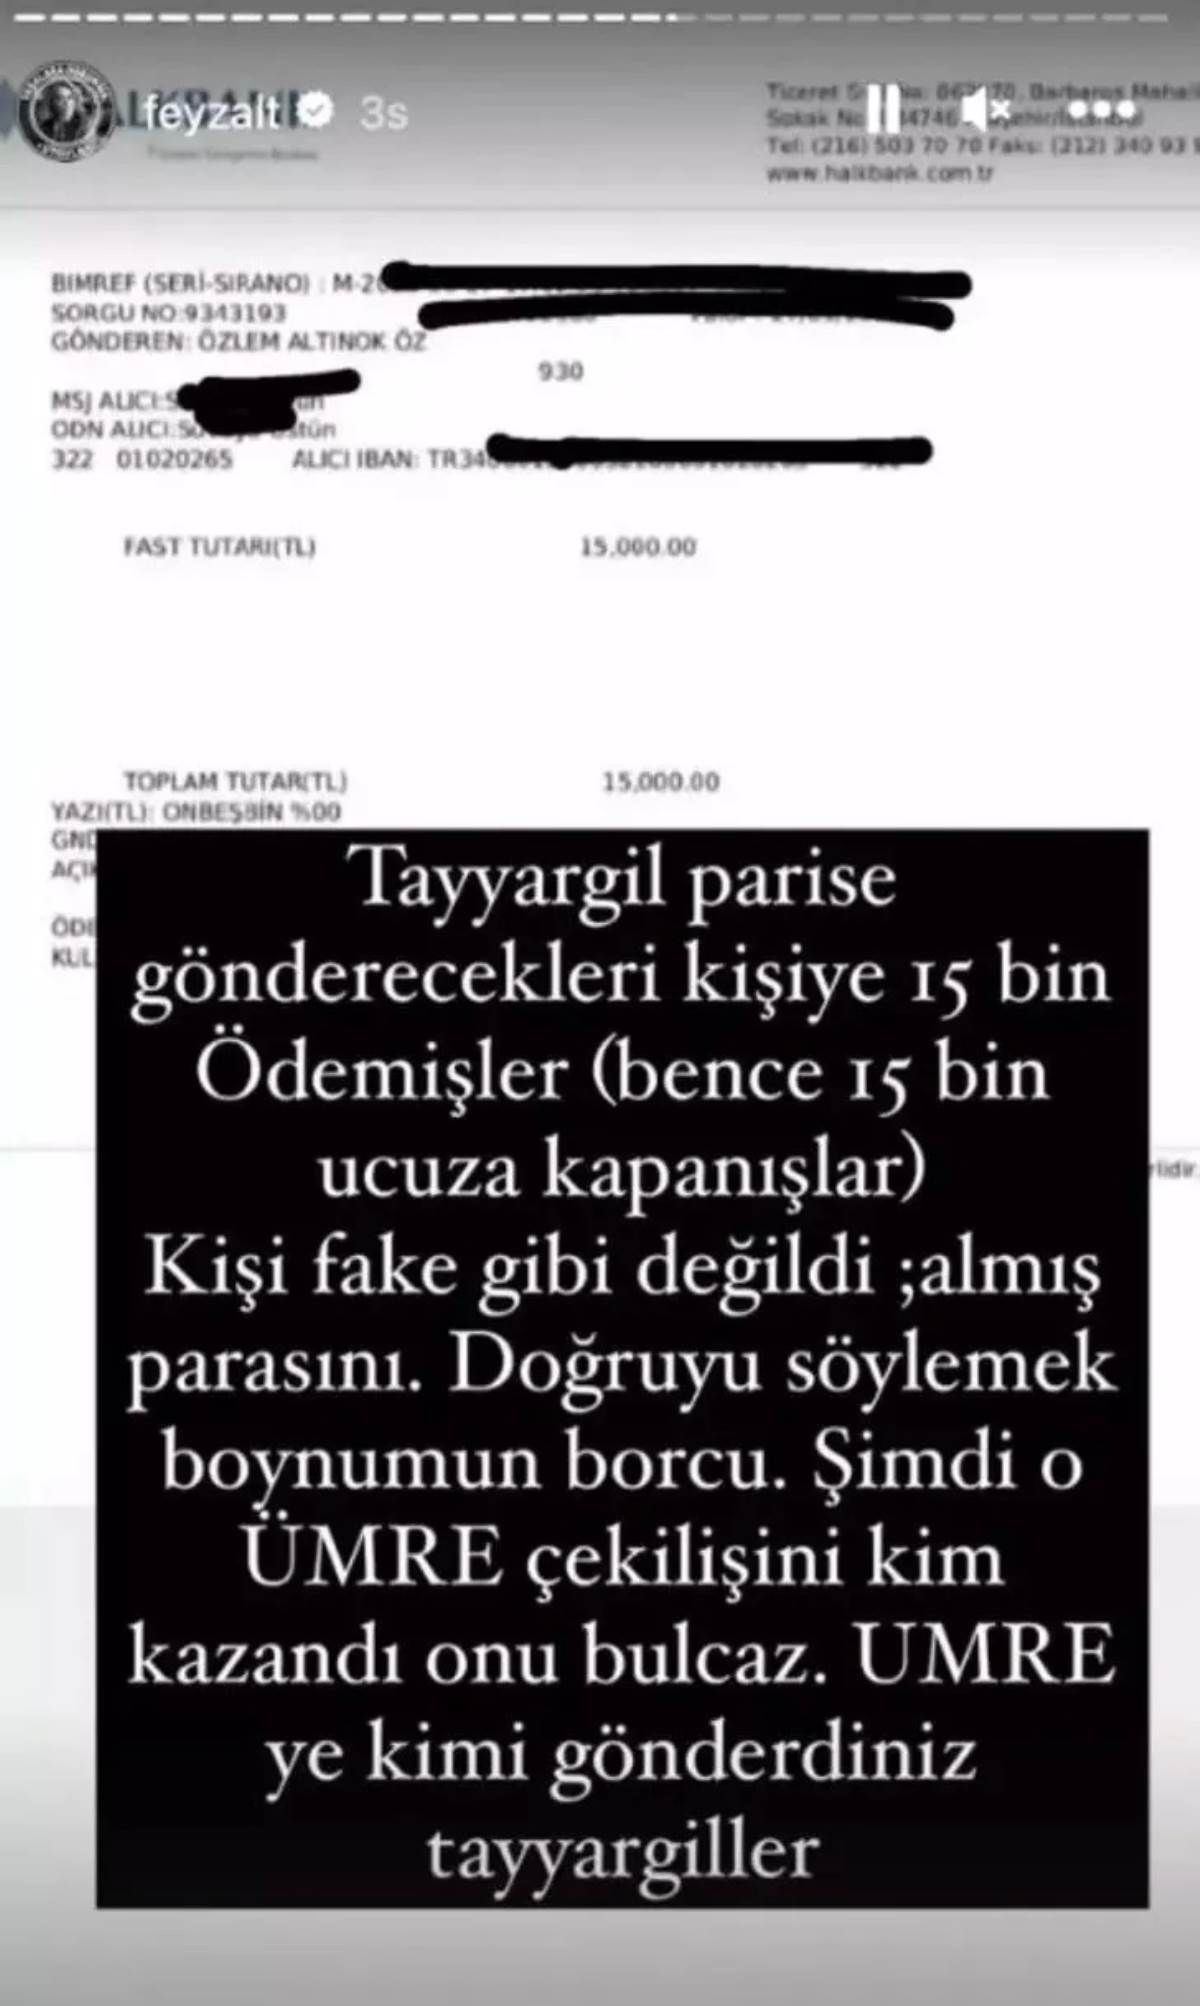 Umre çekilişi yapan Özlem Öz ve Tayyar Öz çiftine dair gerçeği avukat Feyza Altun ortaya çıkardı - Sayfa 3